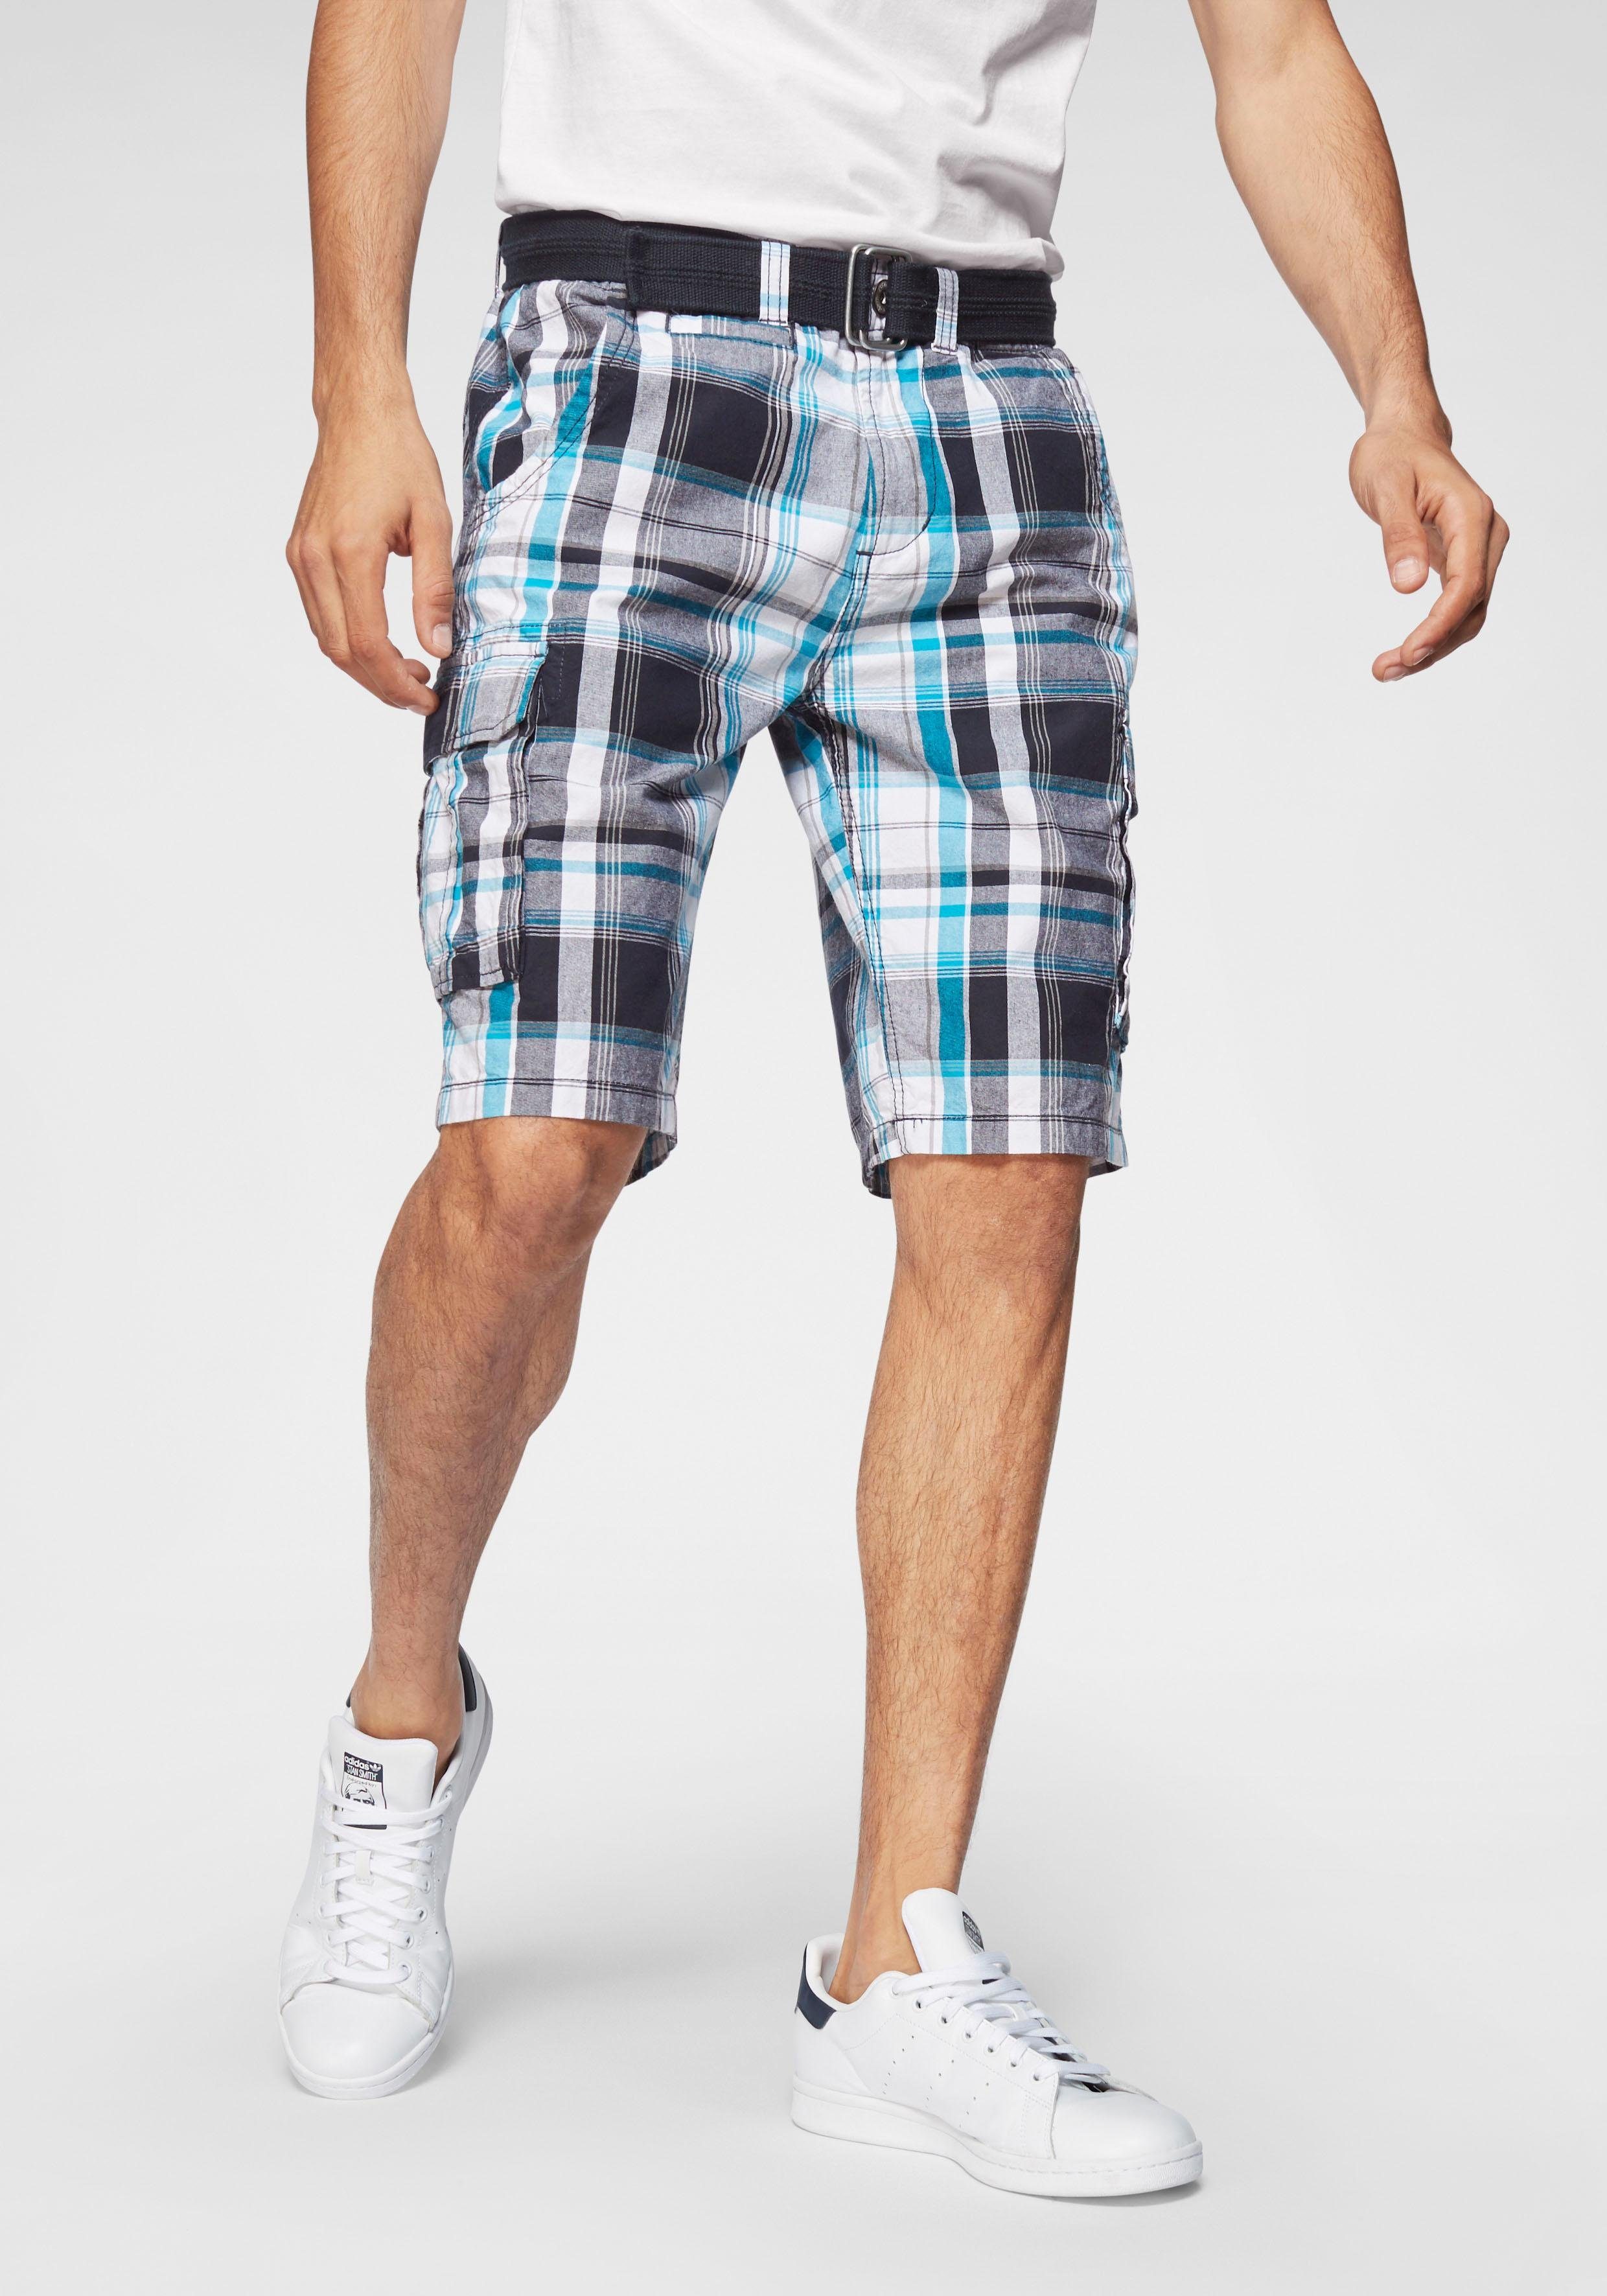 Bermudas für Herren » Bermuda-Shorts kaufen | OTTO